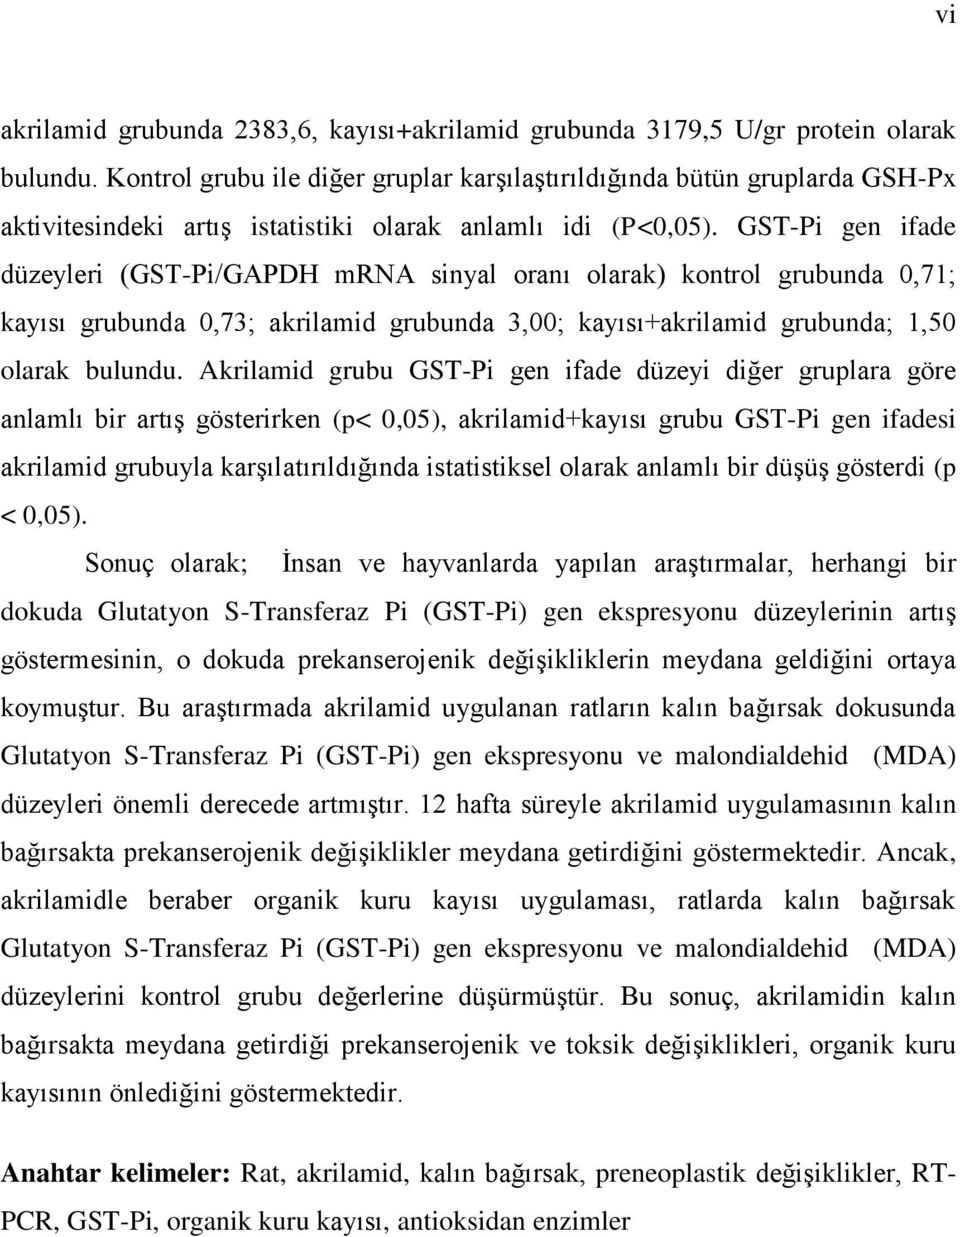 GST-Pi gen ifade düzeyleri (GST-Pi/GAPDH mrna sinyal oranı olarak) kontrol grubunda 0,71; kayısı grubunda 0,73; akrilamid grubunda 3,00; kayısı+akrilamid grubunda; 1,50 olarak bulundu.